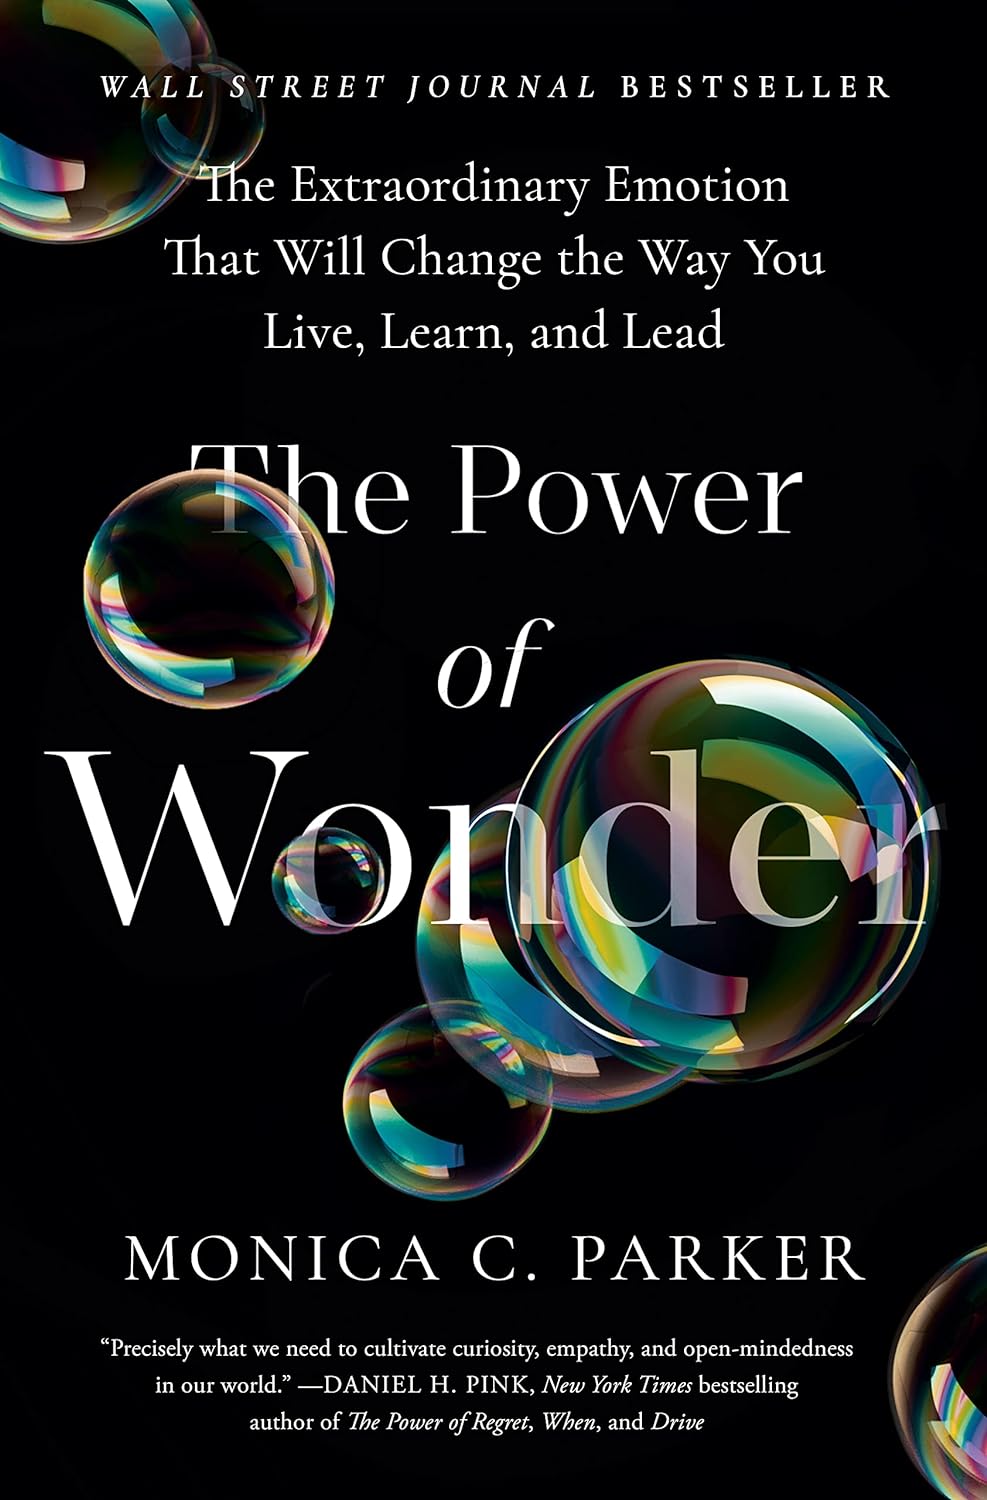 Monica C. Parker: The Power of Wonder (TarcherPerigee)